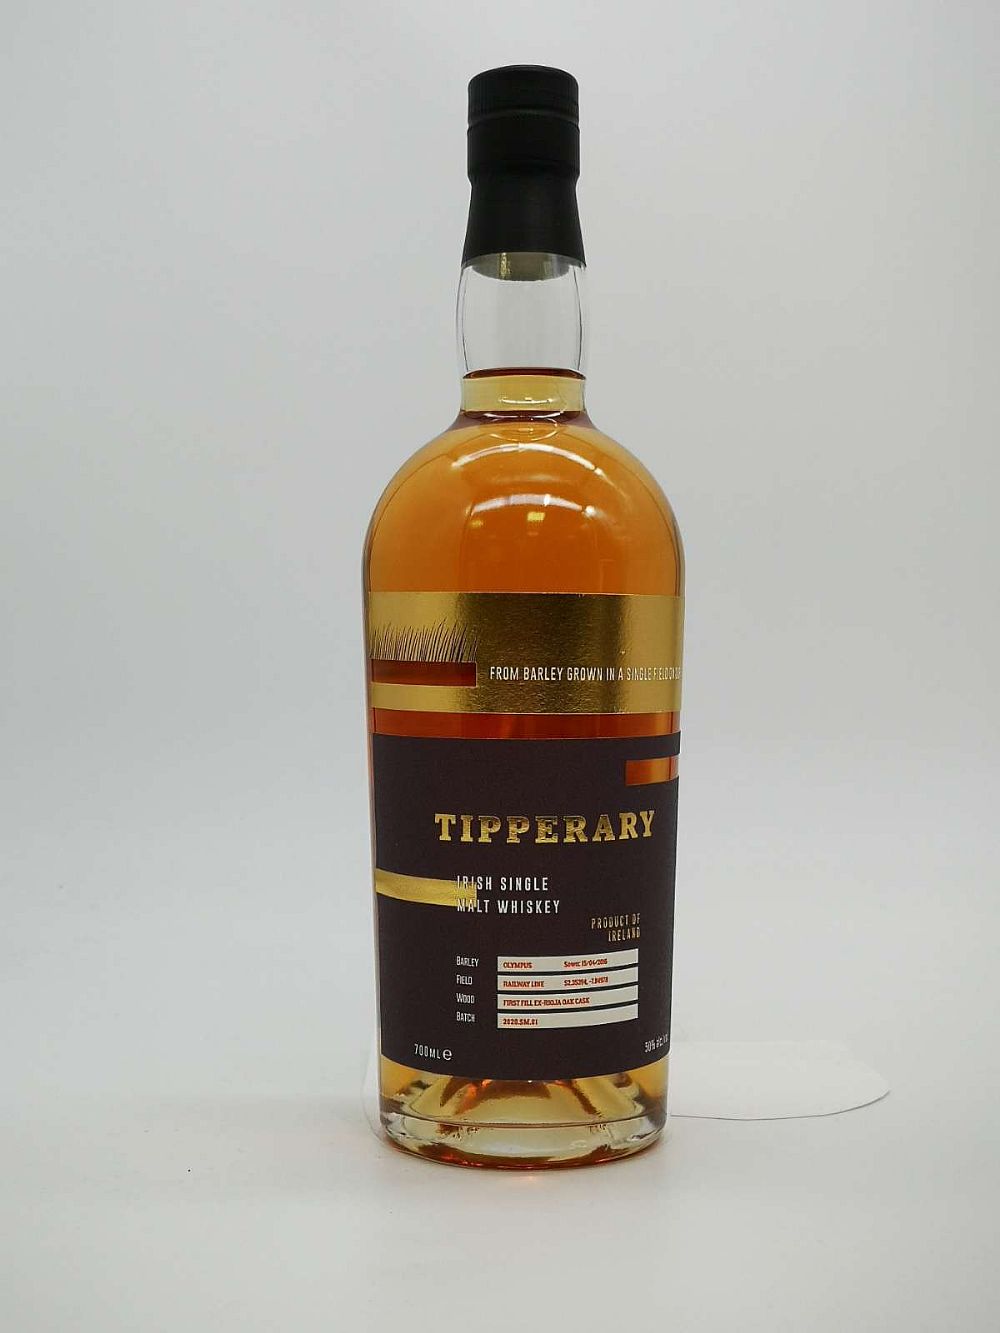 Tipperary Single Malt, First Fill ex-Rioja Oak Cask Finish